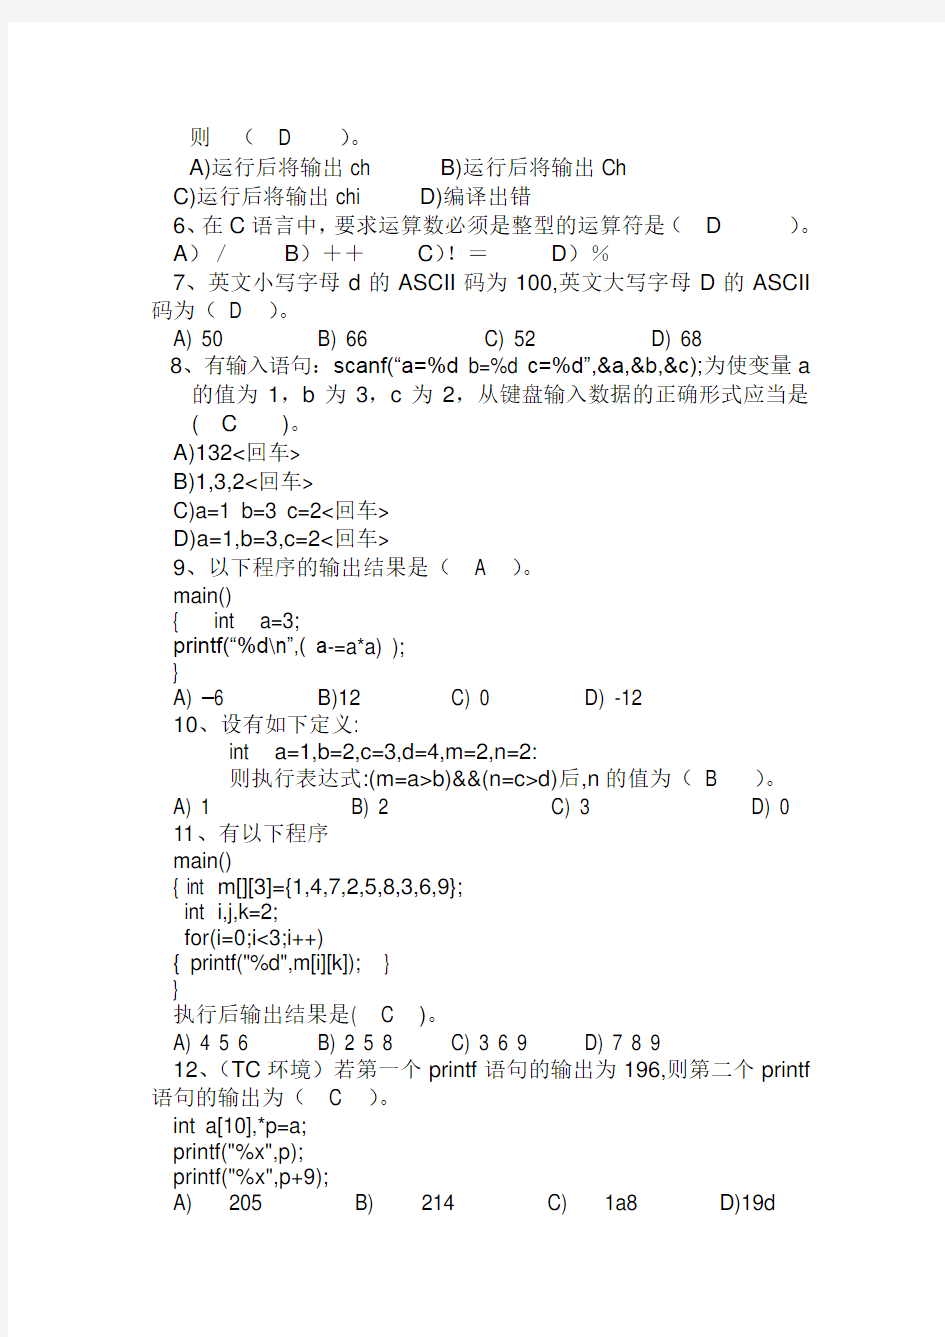 湘潭大学《C语言程序设计Ⅱ》课程考试试卷